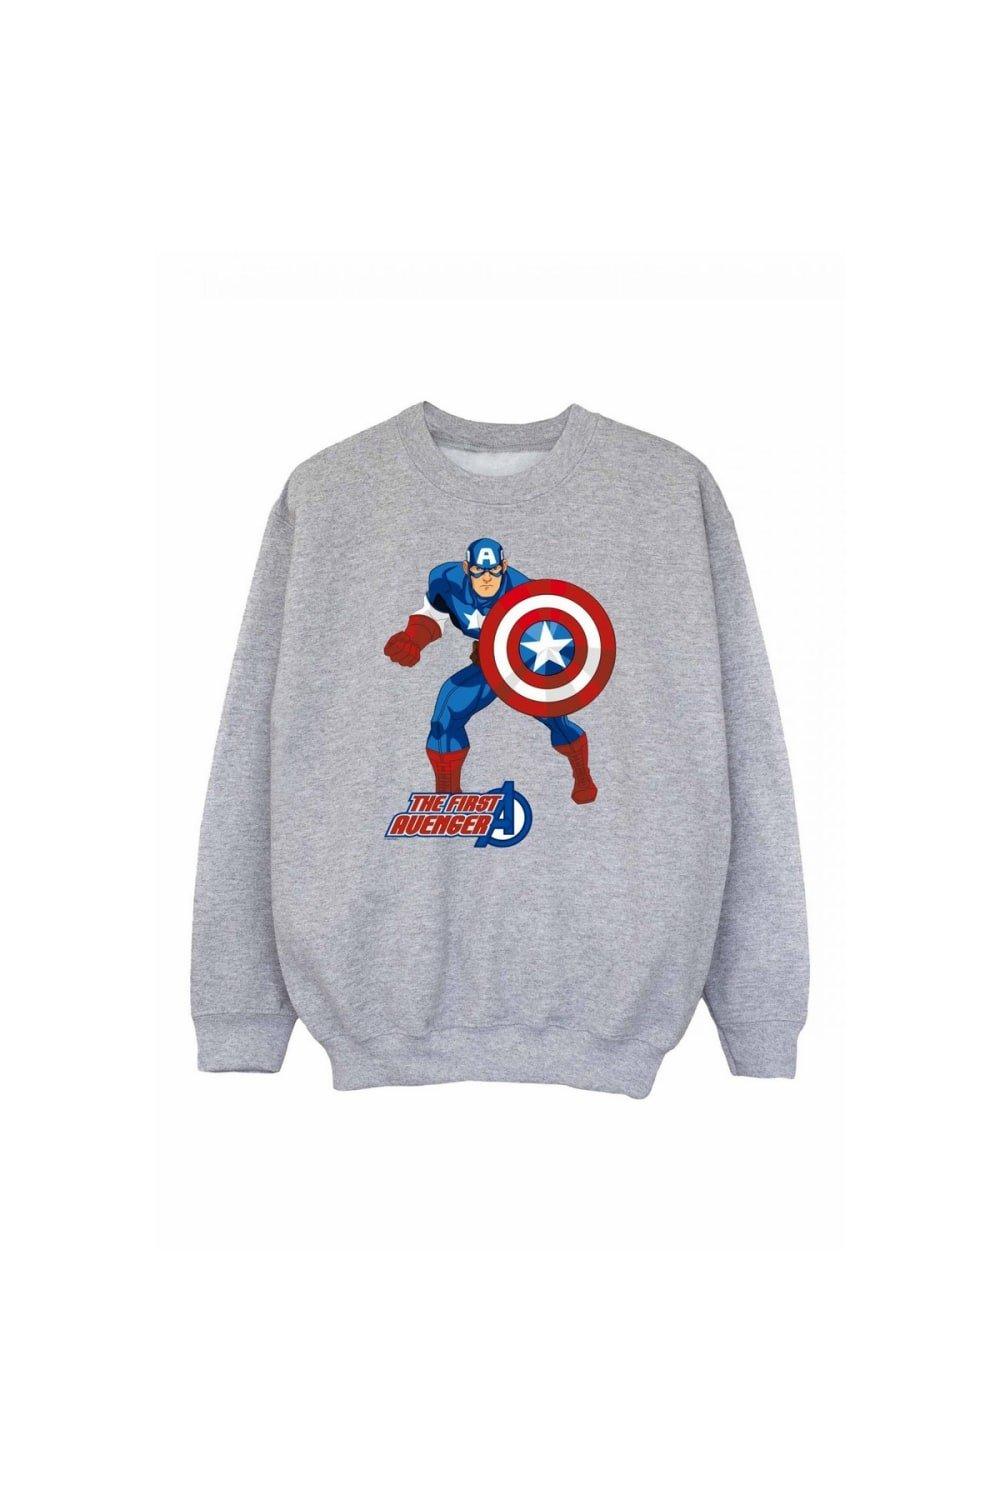 The First Avenger Sweatshirt